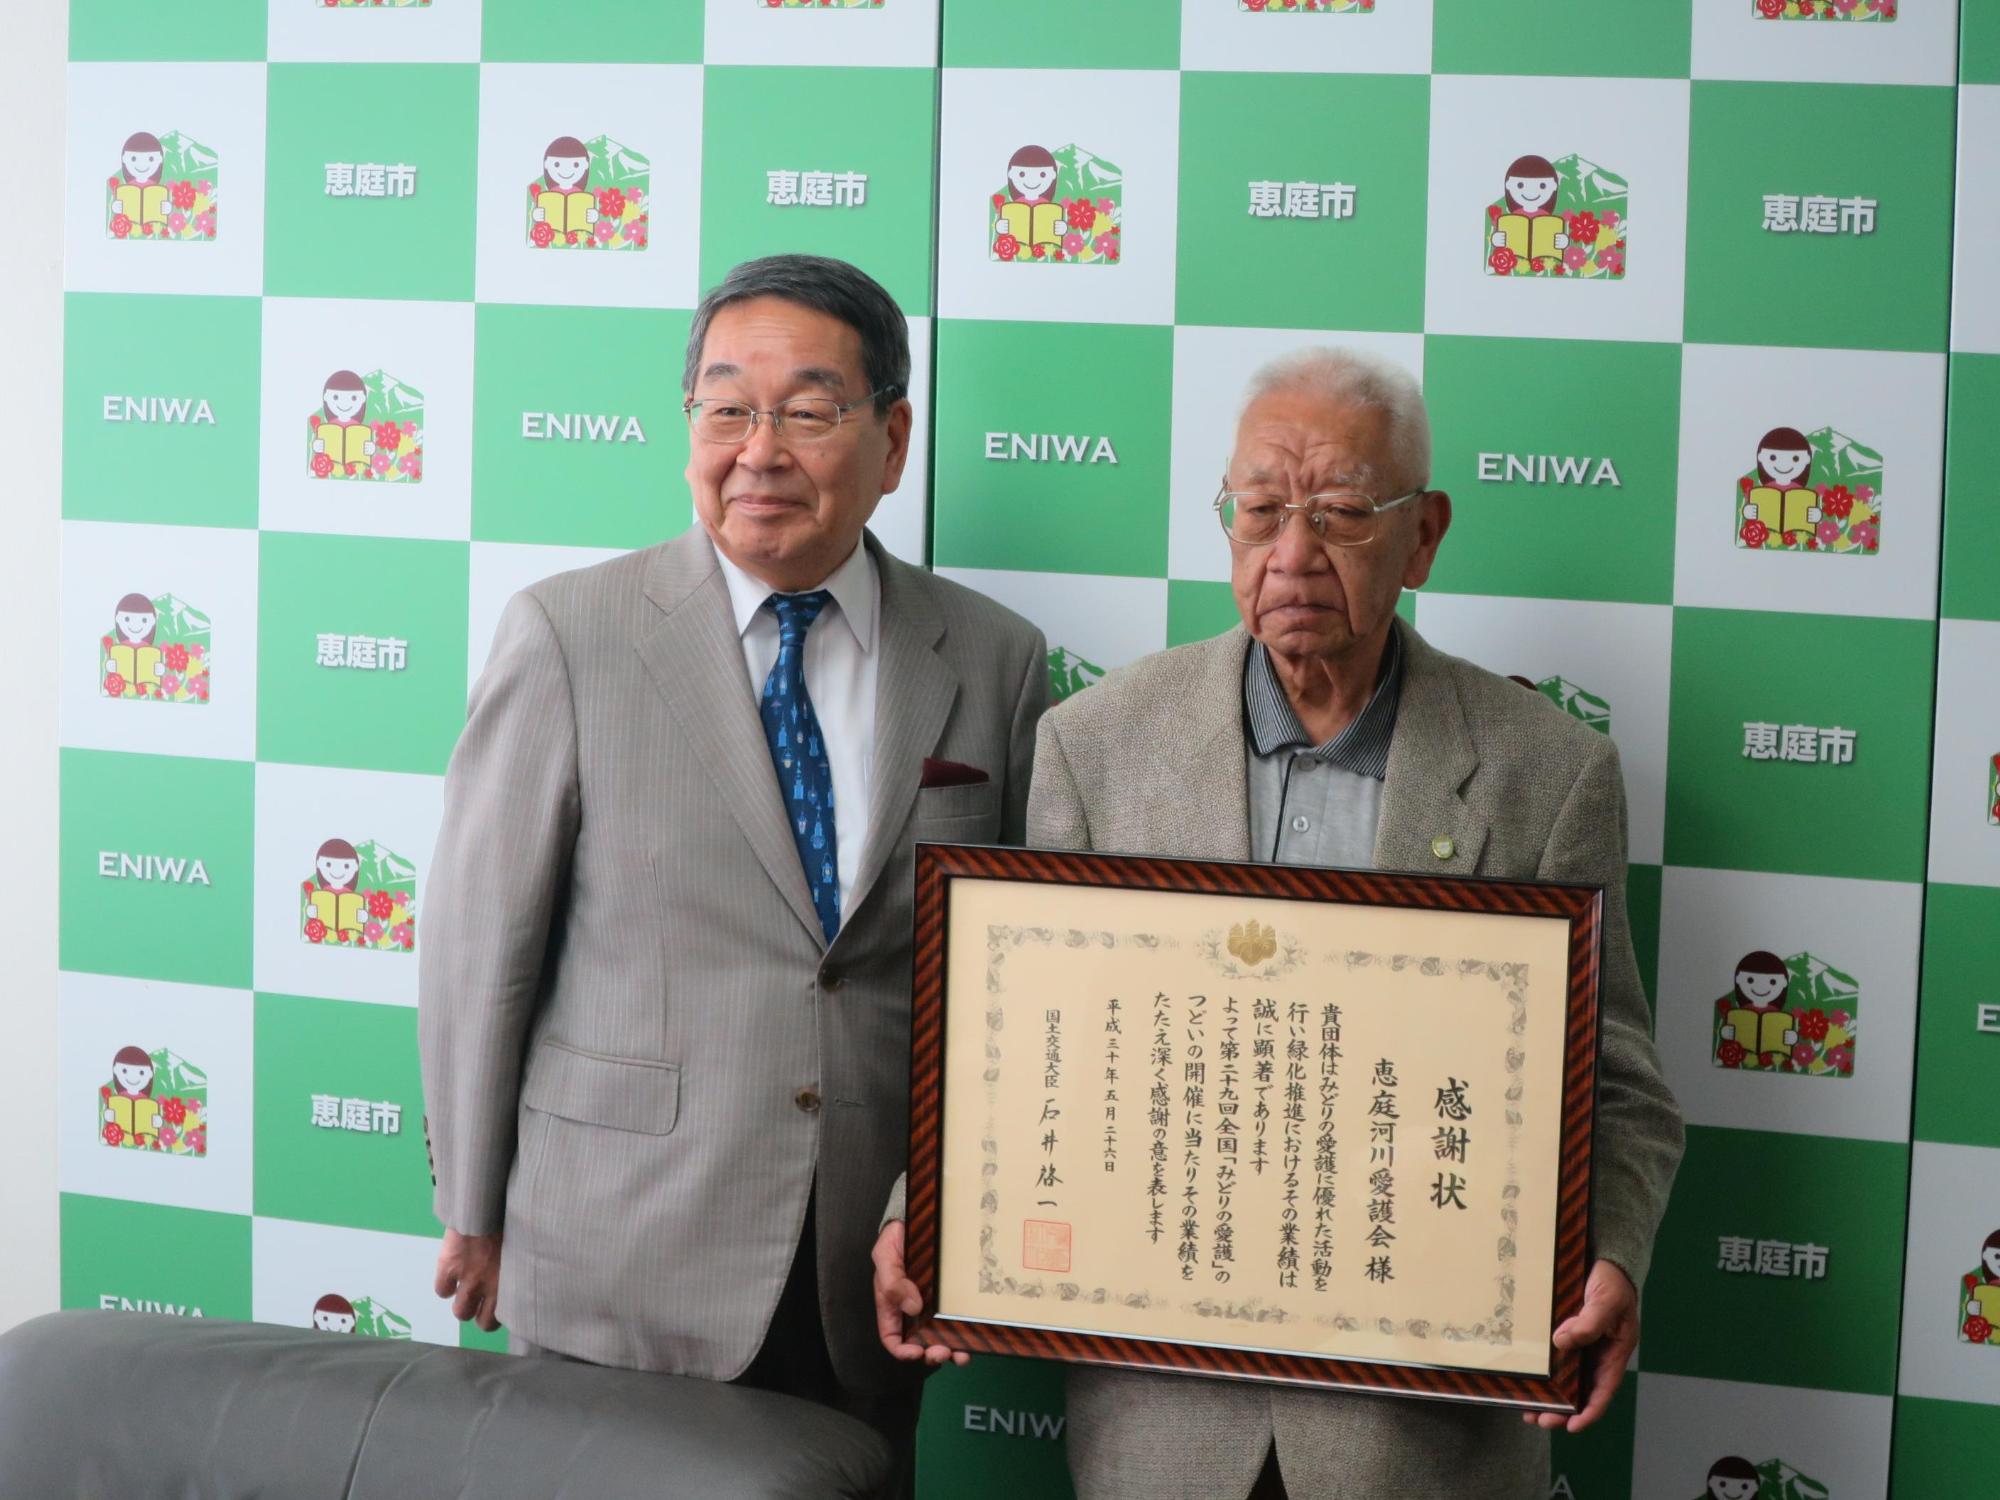 功労者国土交通大臣表彰を受賞された恵庭河川愛護会の三浦会長と原田市長が記念撮影している写真